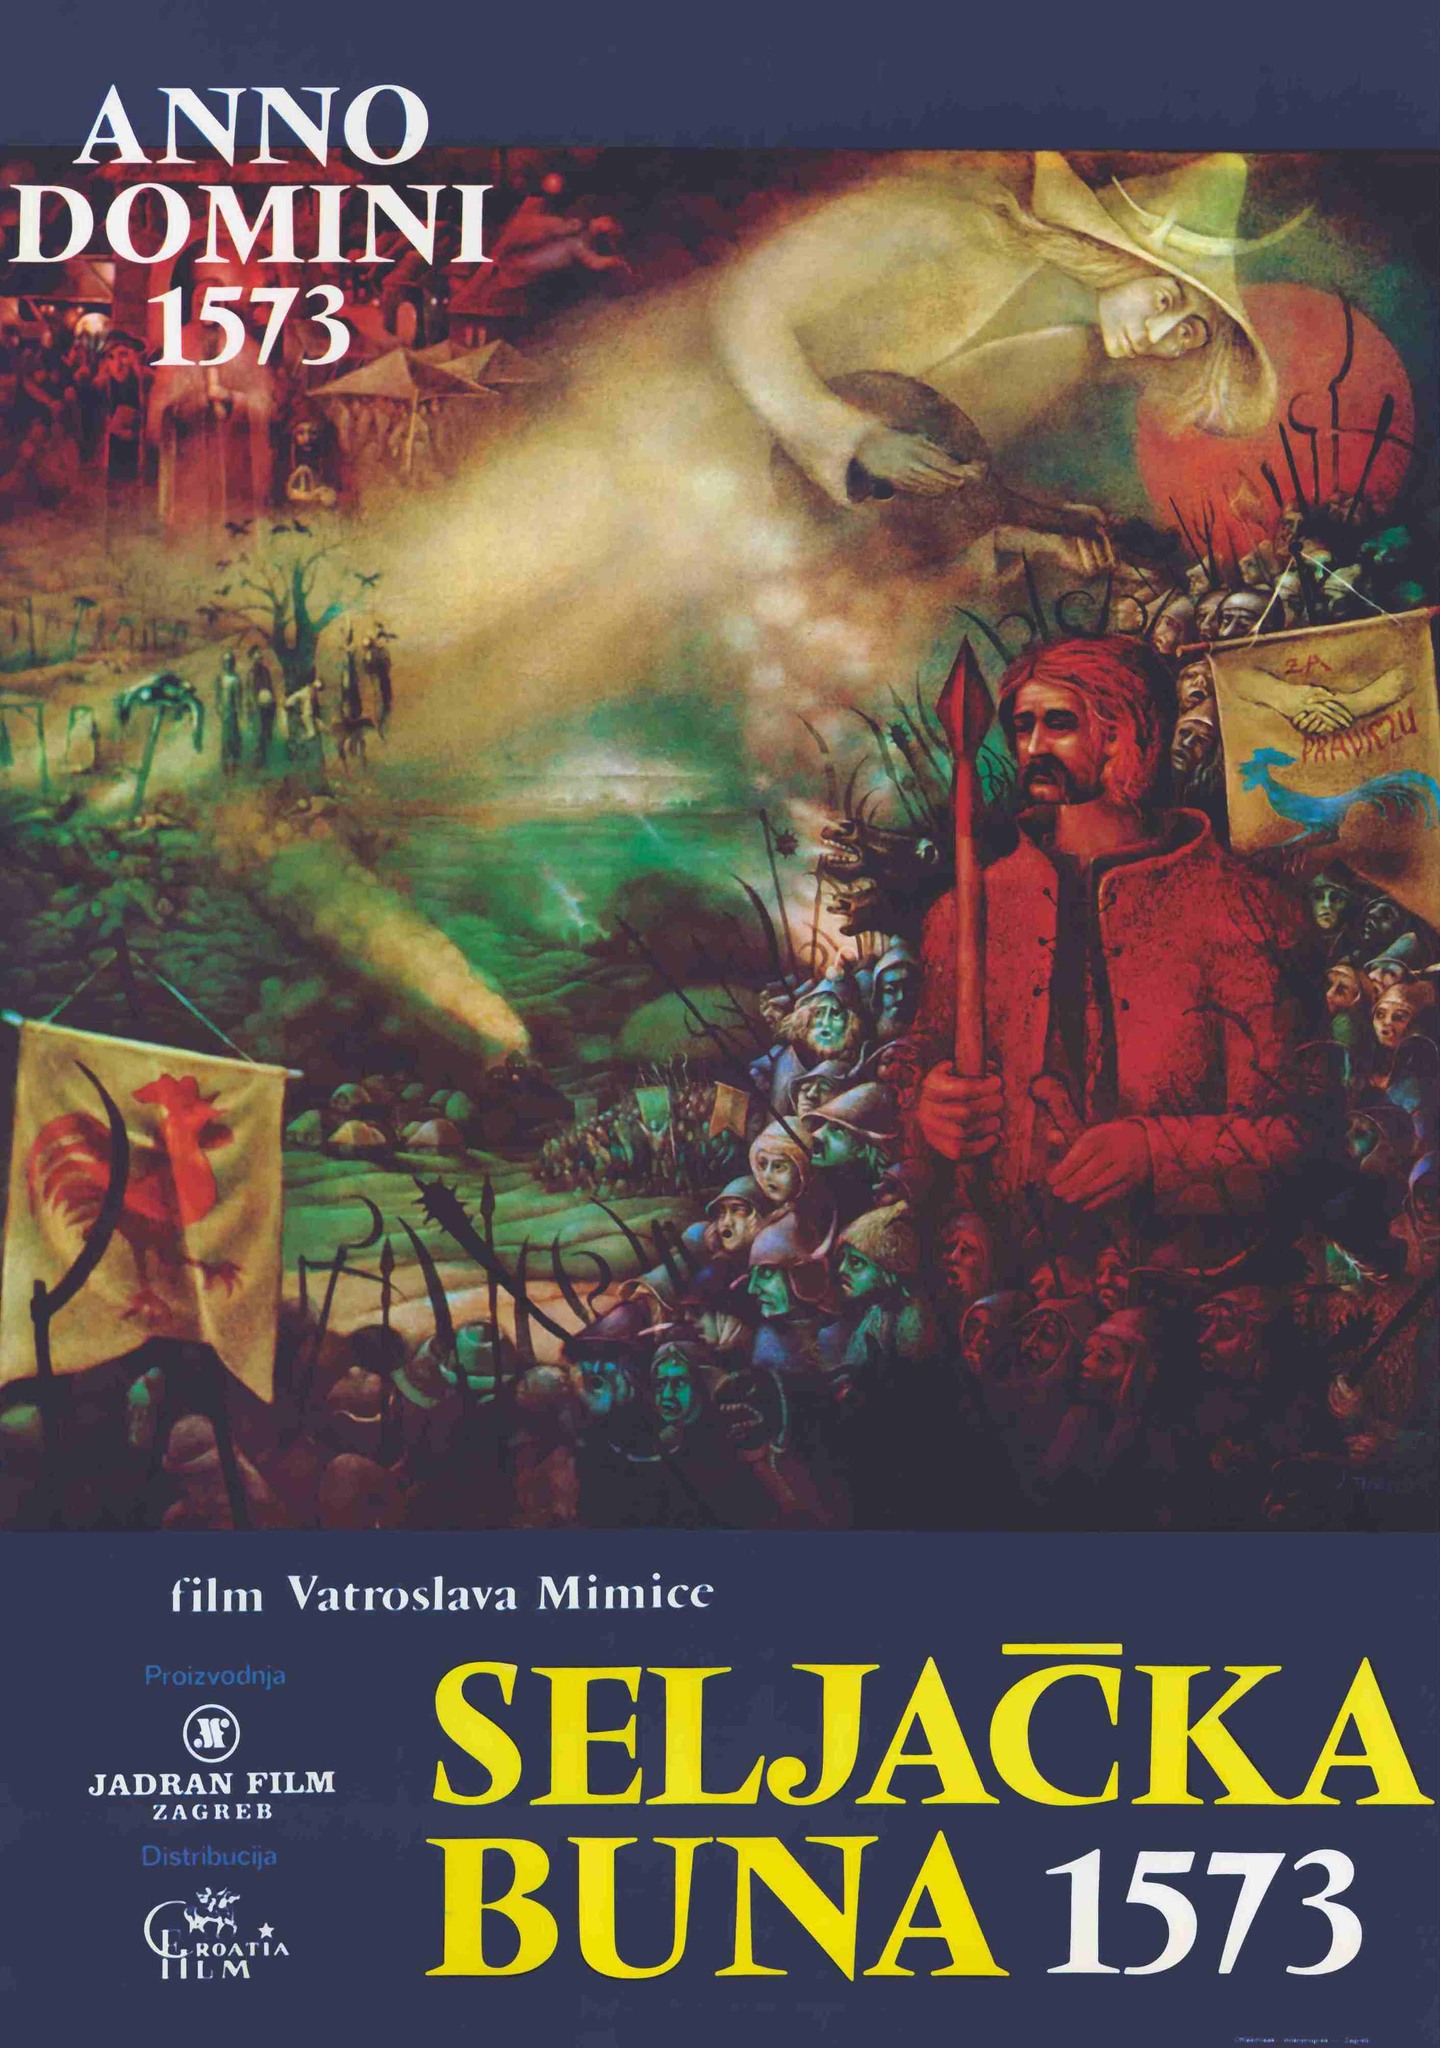 You are currently viewing Godišnjica kinopremijere filma Seljačka buna 1573. redatelja Vatroslava Mimice